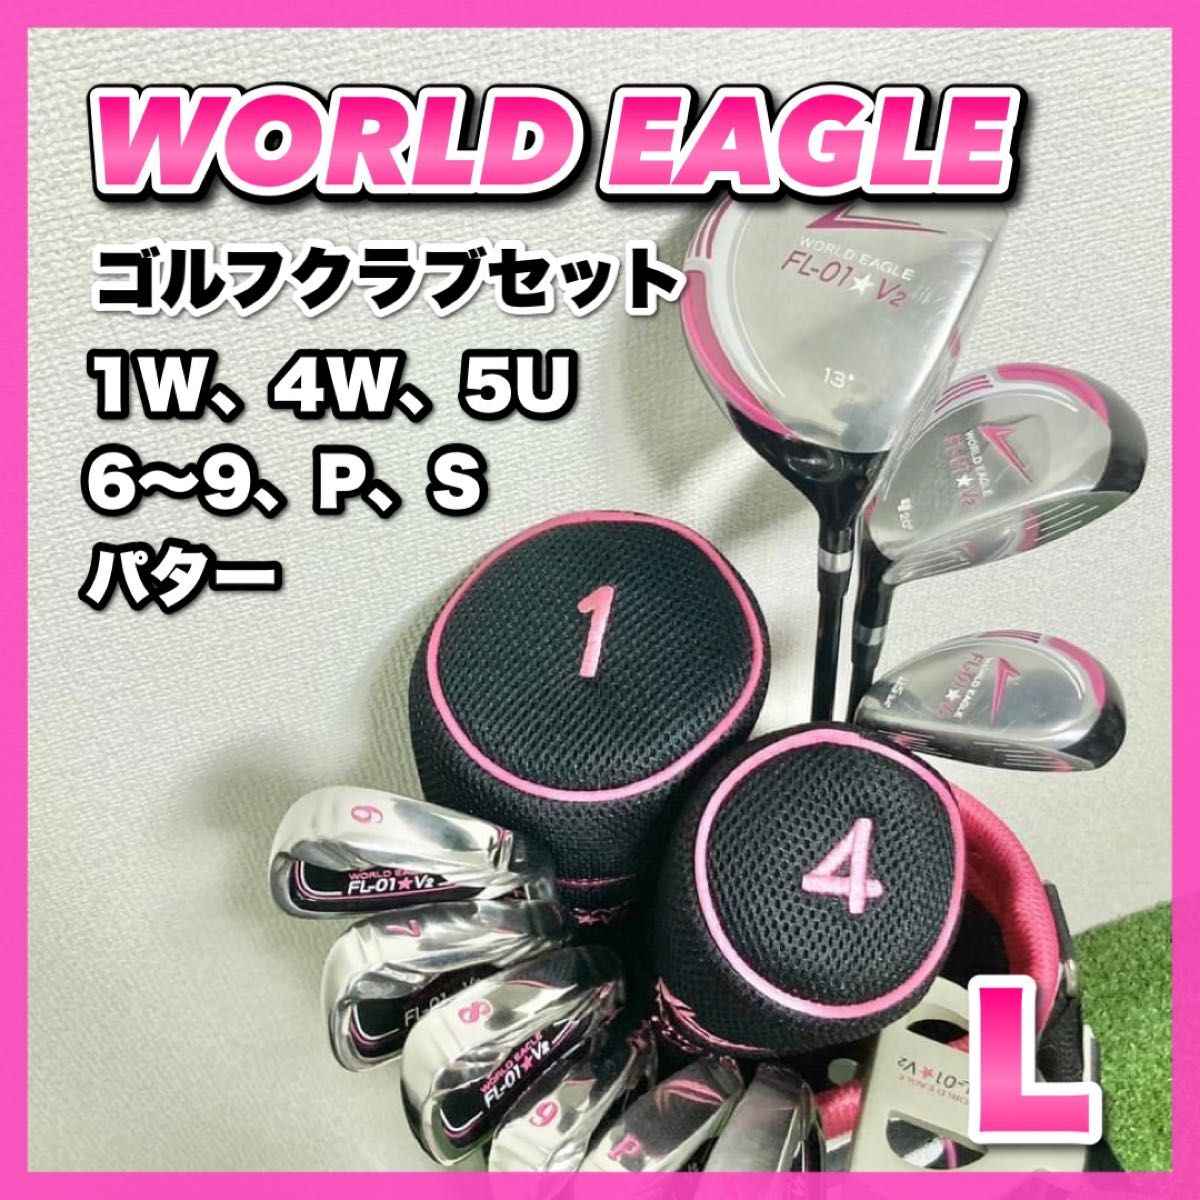 未使用含】WORLD EAGLE/ワールドイーグル FL-01 V2 ゴルフクラブ 10本+